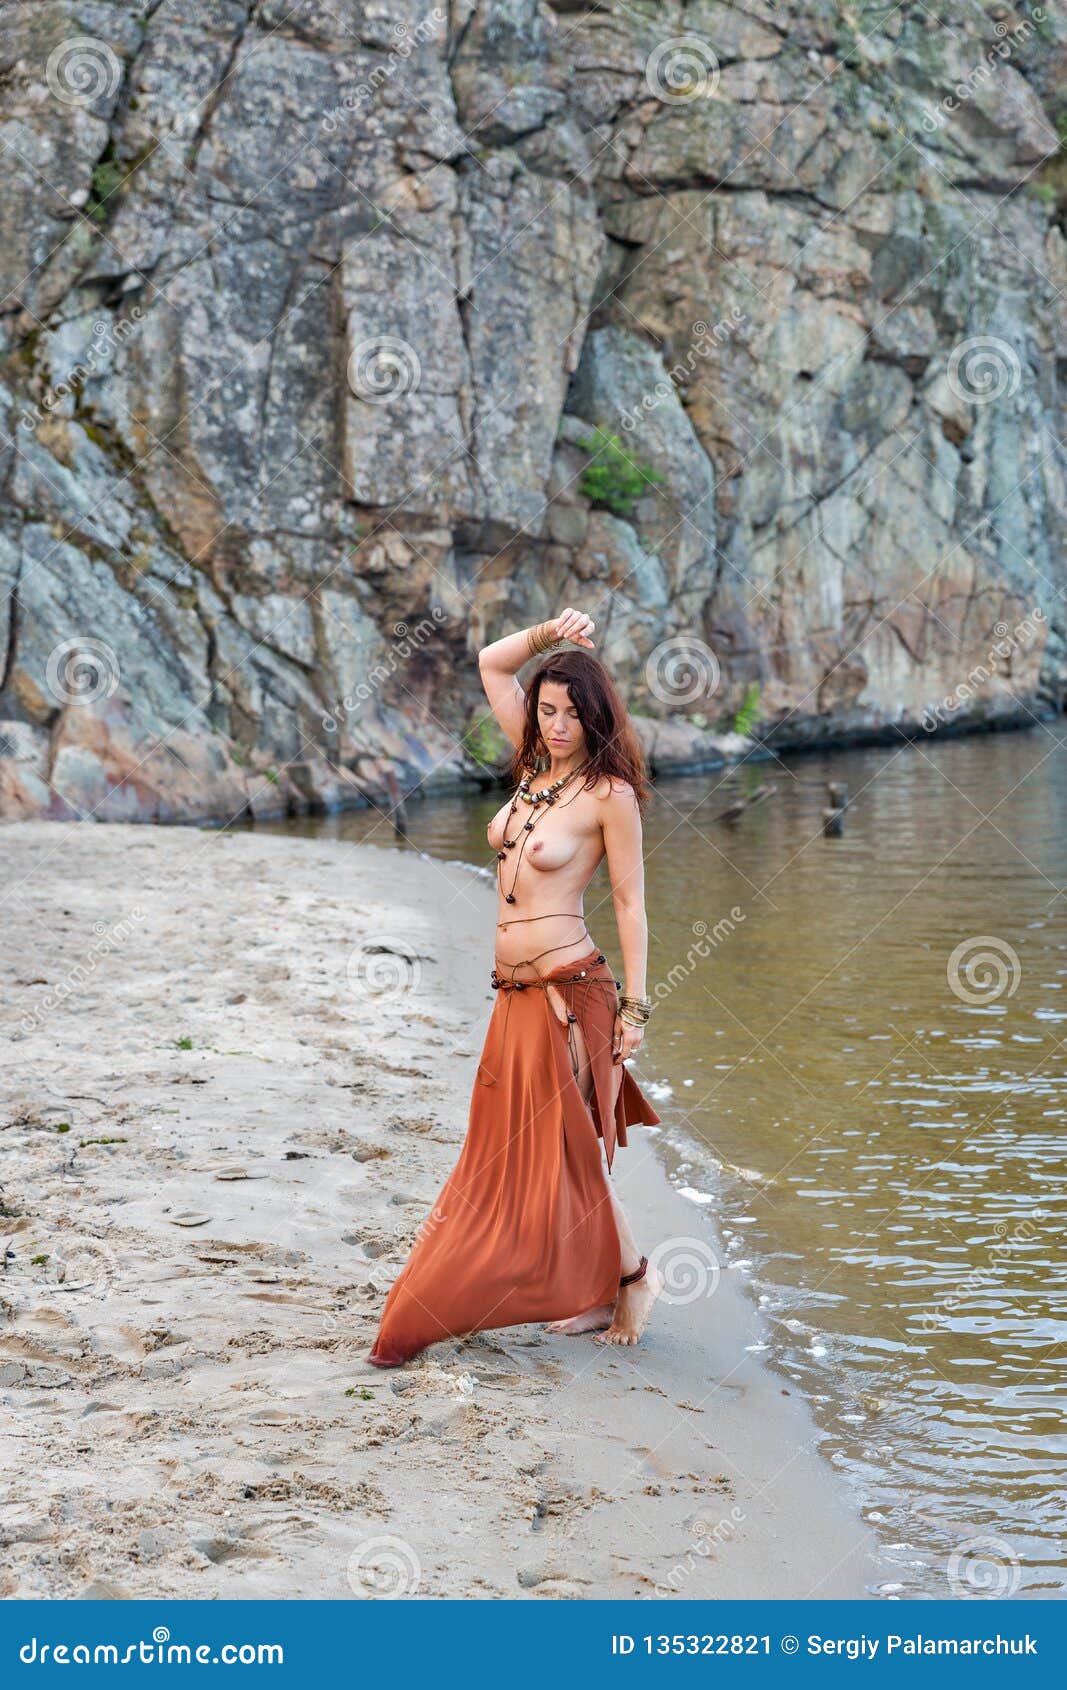 Nude amazon women Amazon Pics